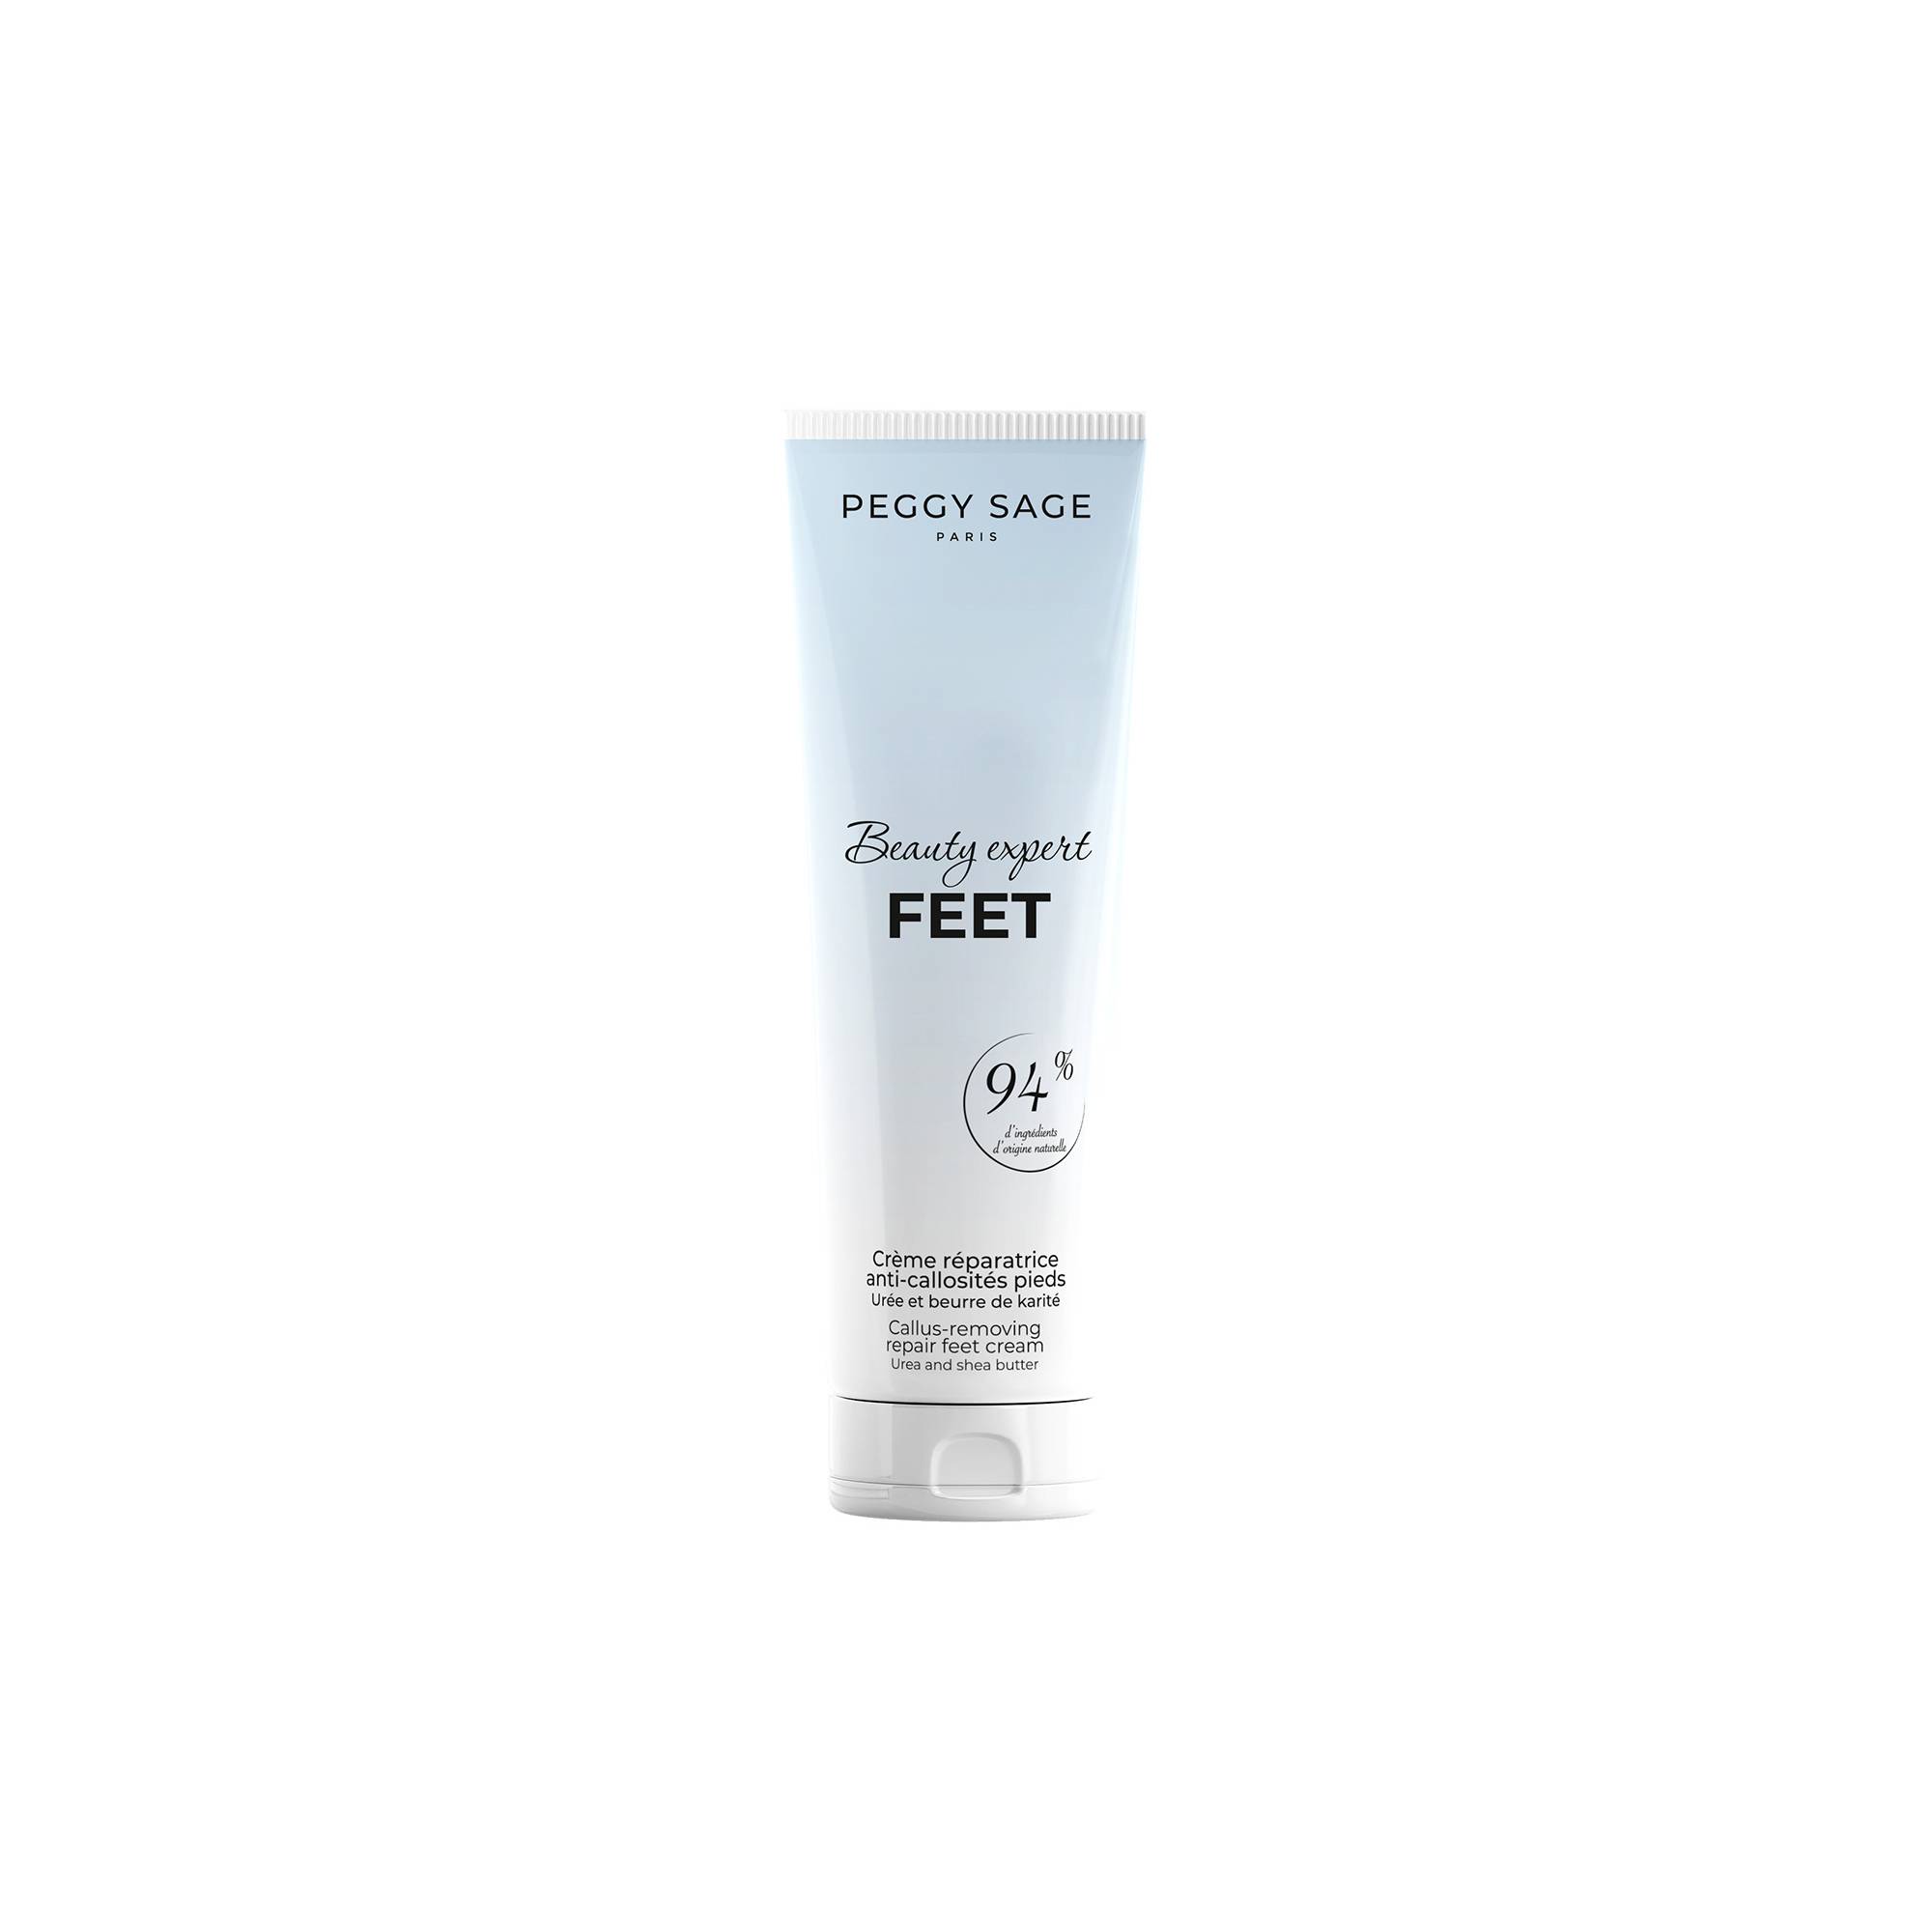 Crème réparatrice anti-callosités pieds Beauty expert Feet de la marque Peggy Sage Contenance 100ml - 1